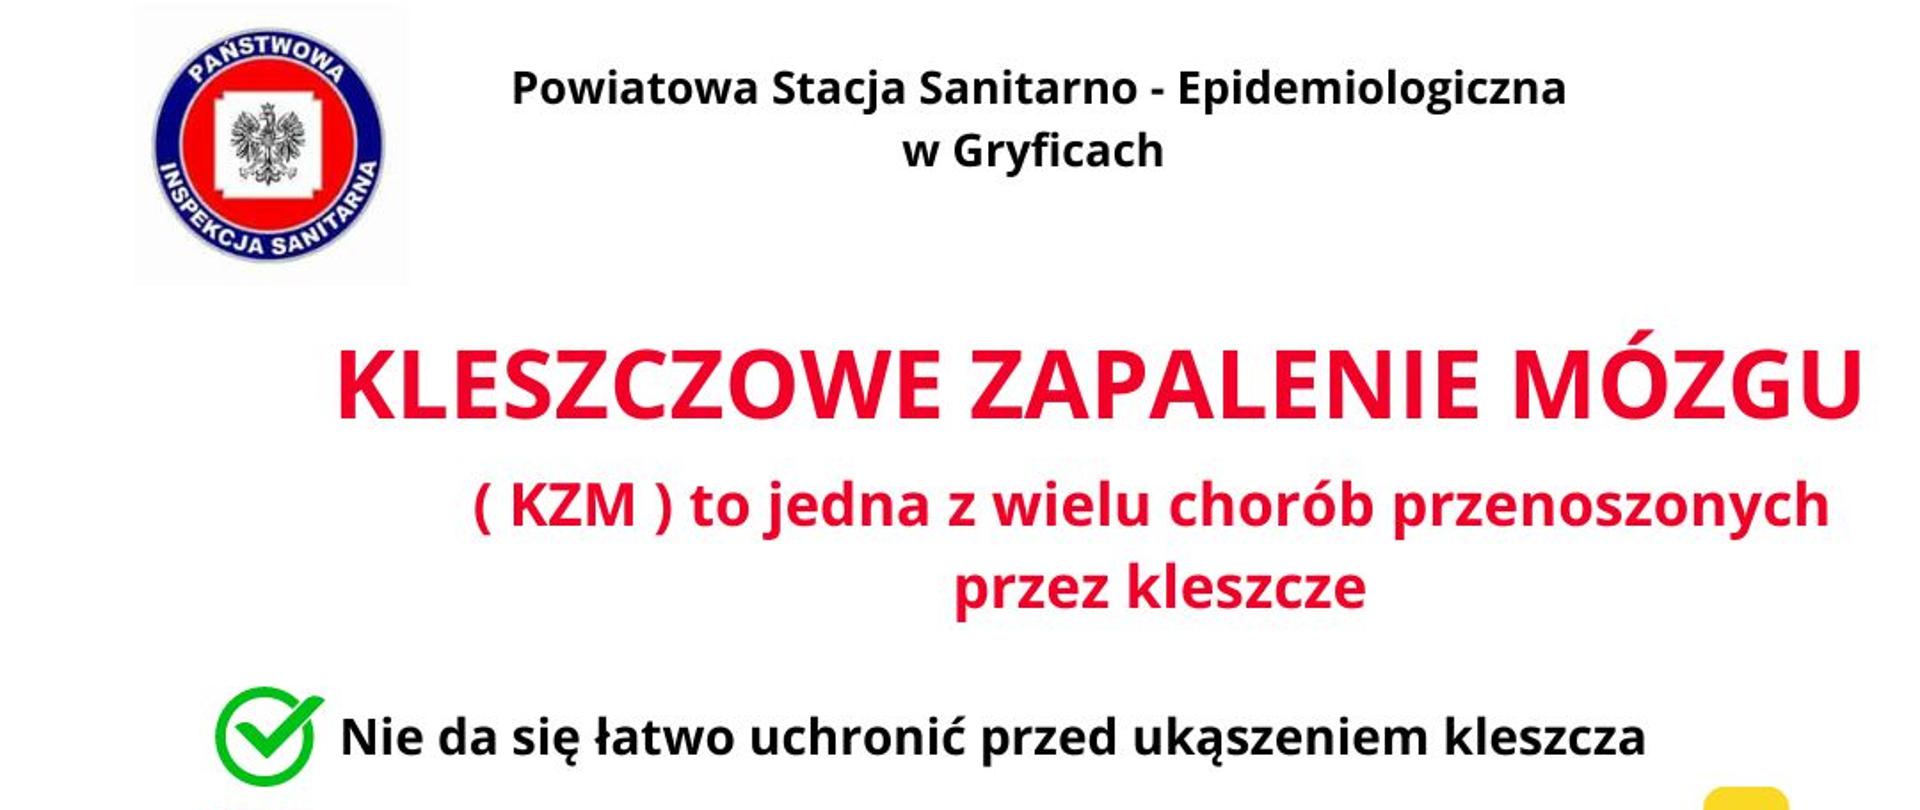 30 marca – Ogólnopolski Dzień Świadomości KZM